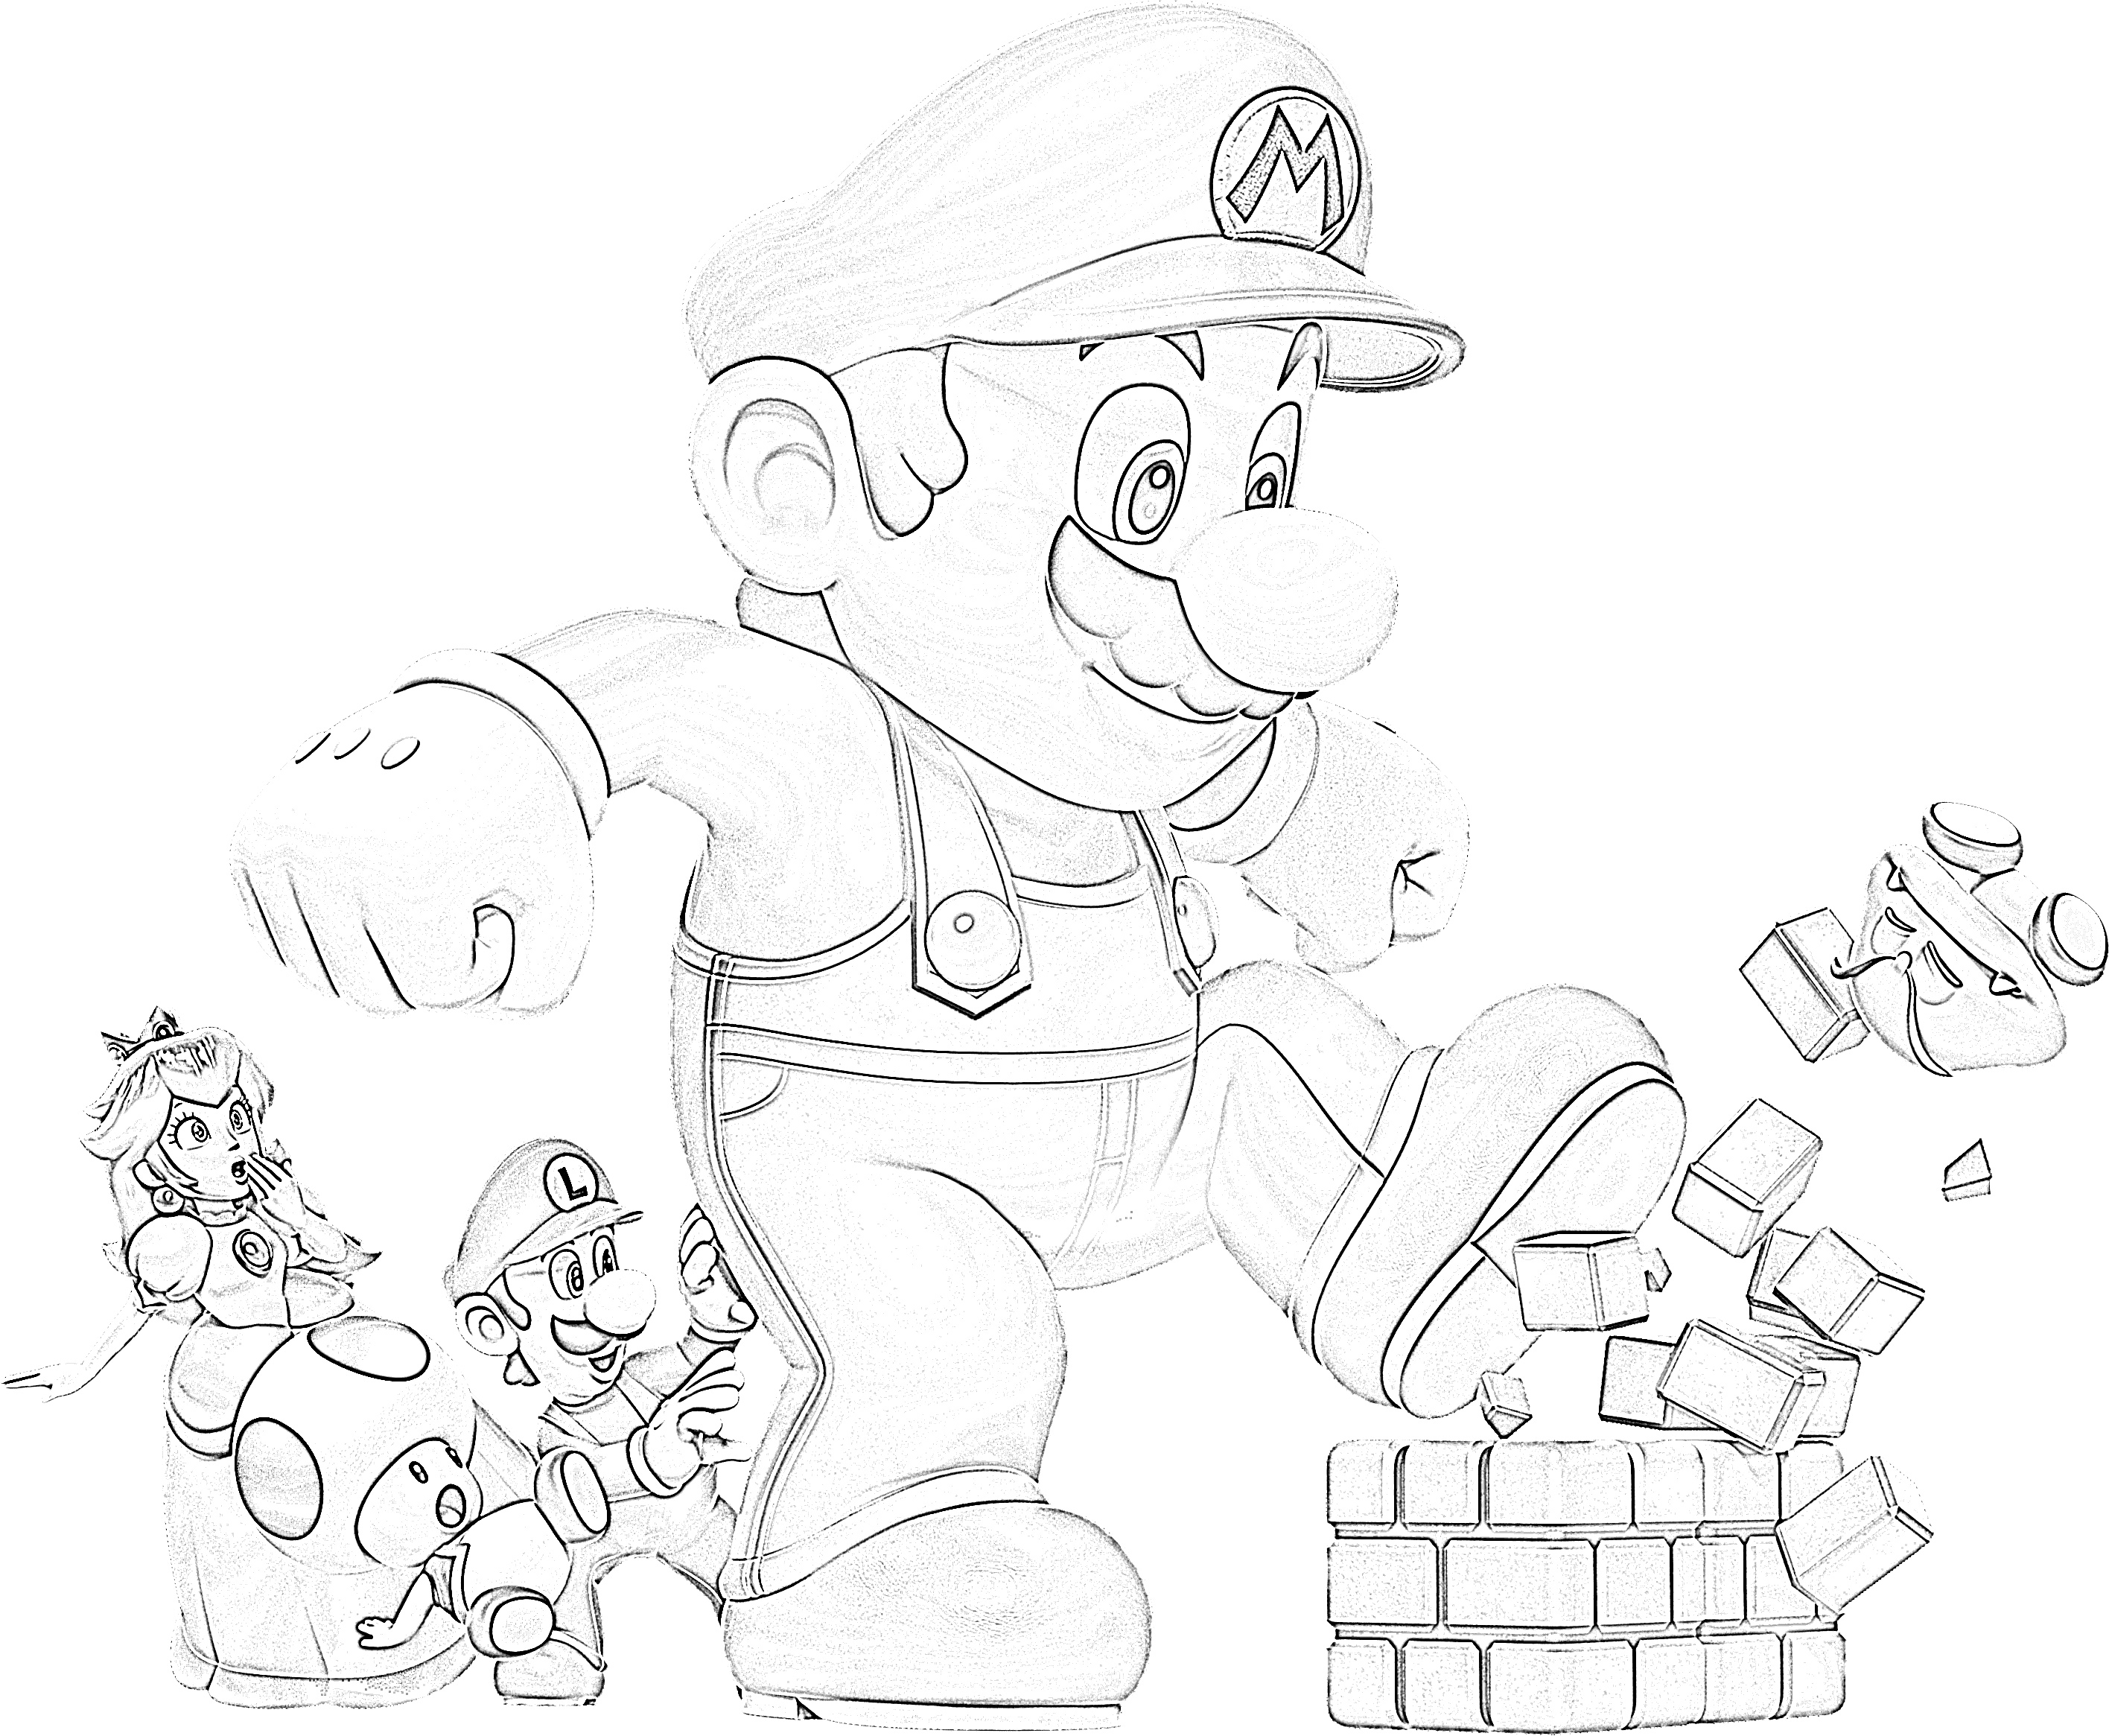 Super mario kicking bricks coloring page